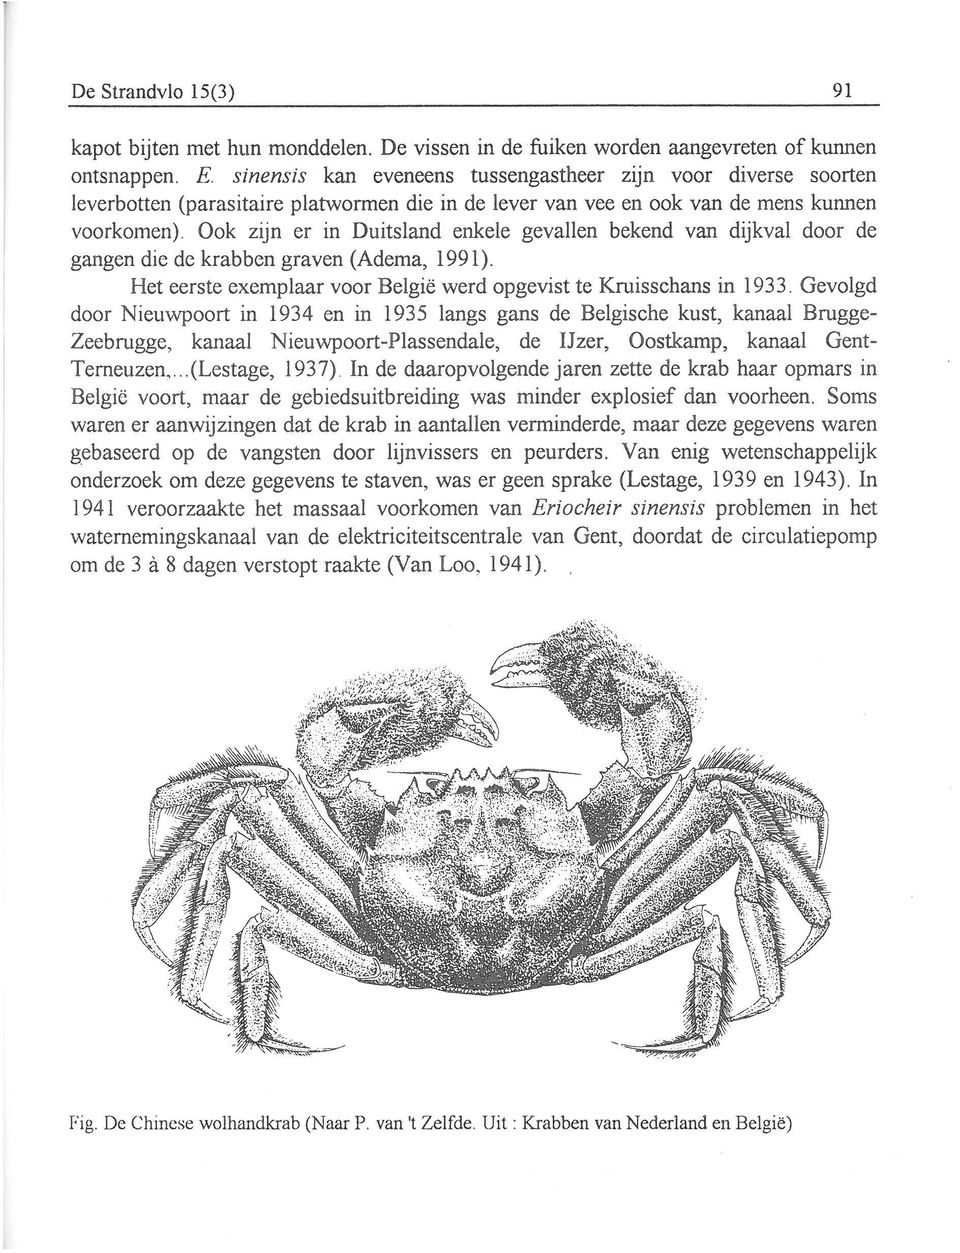 Ook zijn er in Duisland enkele gevallen bekend van dijkval door de gangen die de krabben graven (Adema, 1991). He eerse exemplaar voor België werd opgevis e Kruisschans in 1933.